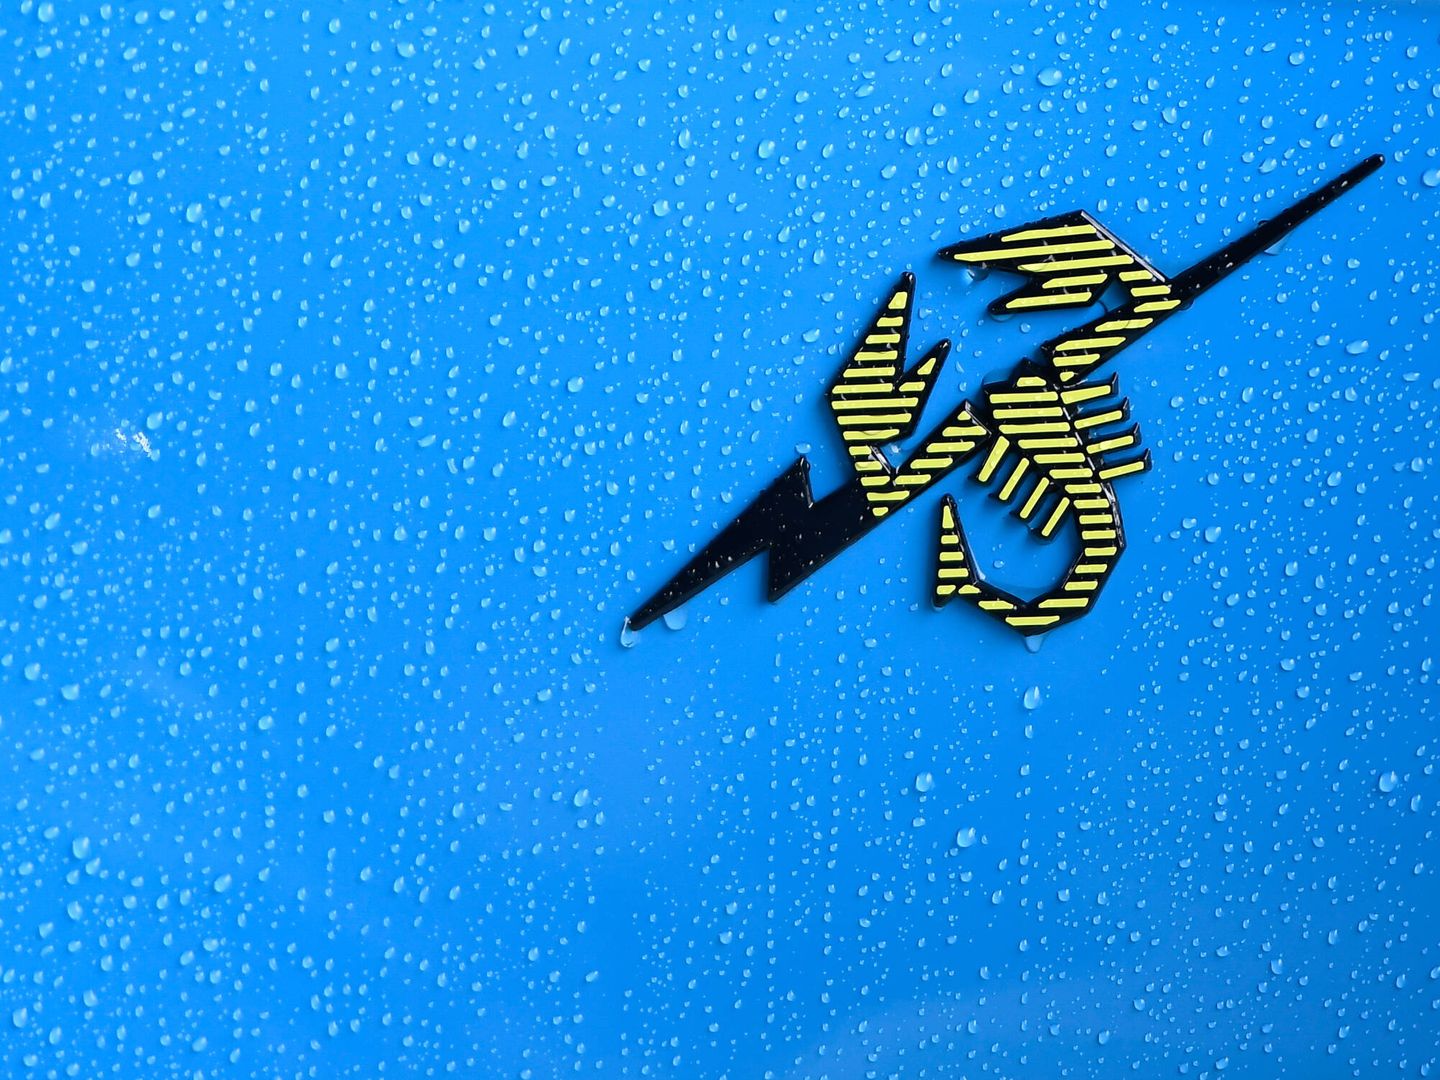 El logo de Abarth no cambia, pero el 500e luce en los laterales este emblema: rayo y escorpión.